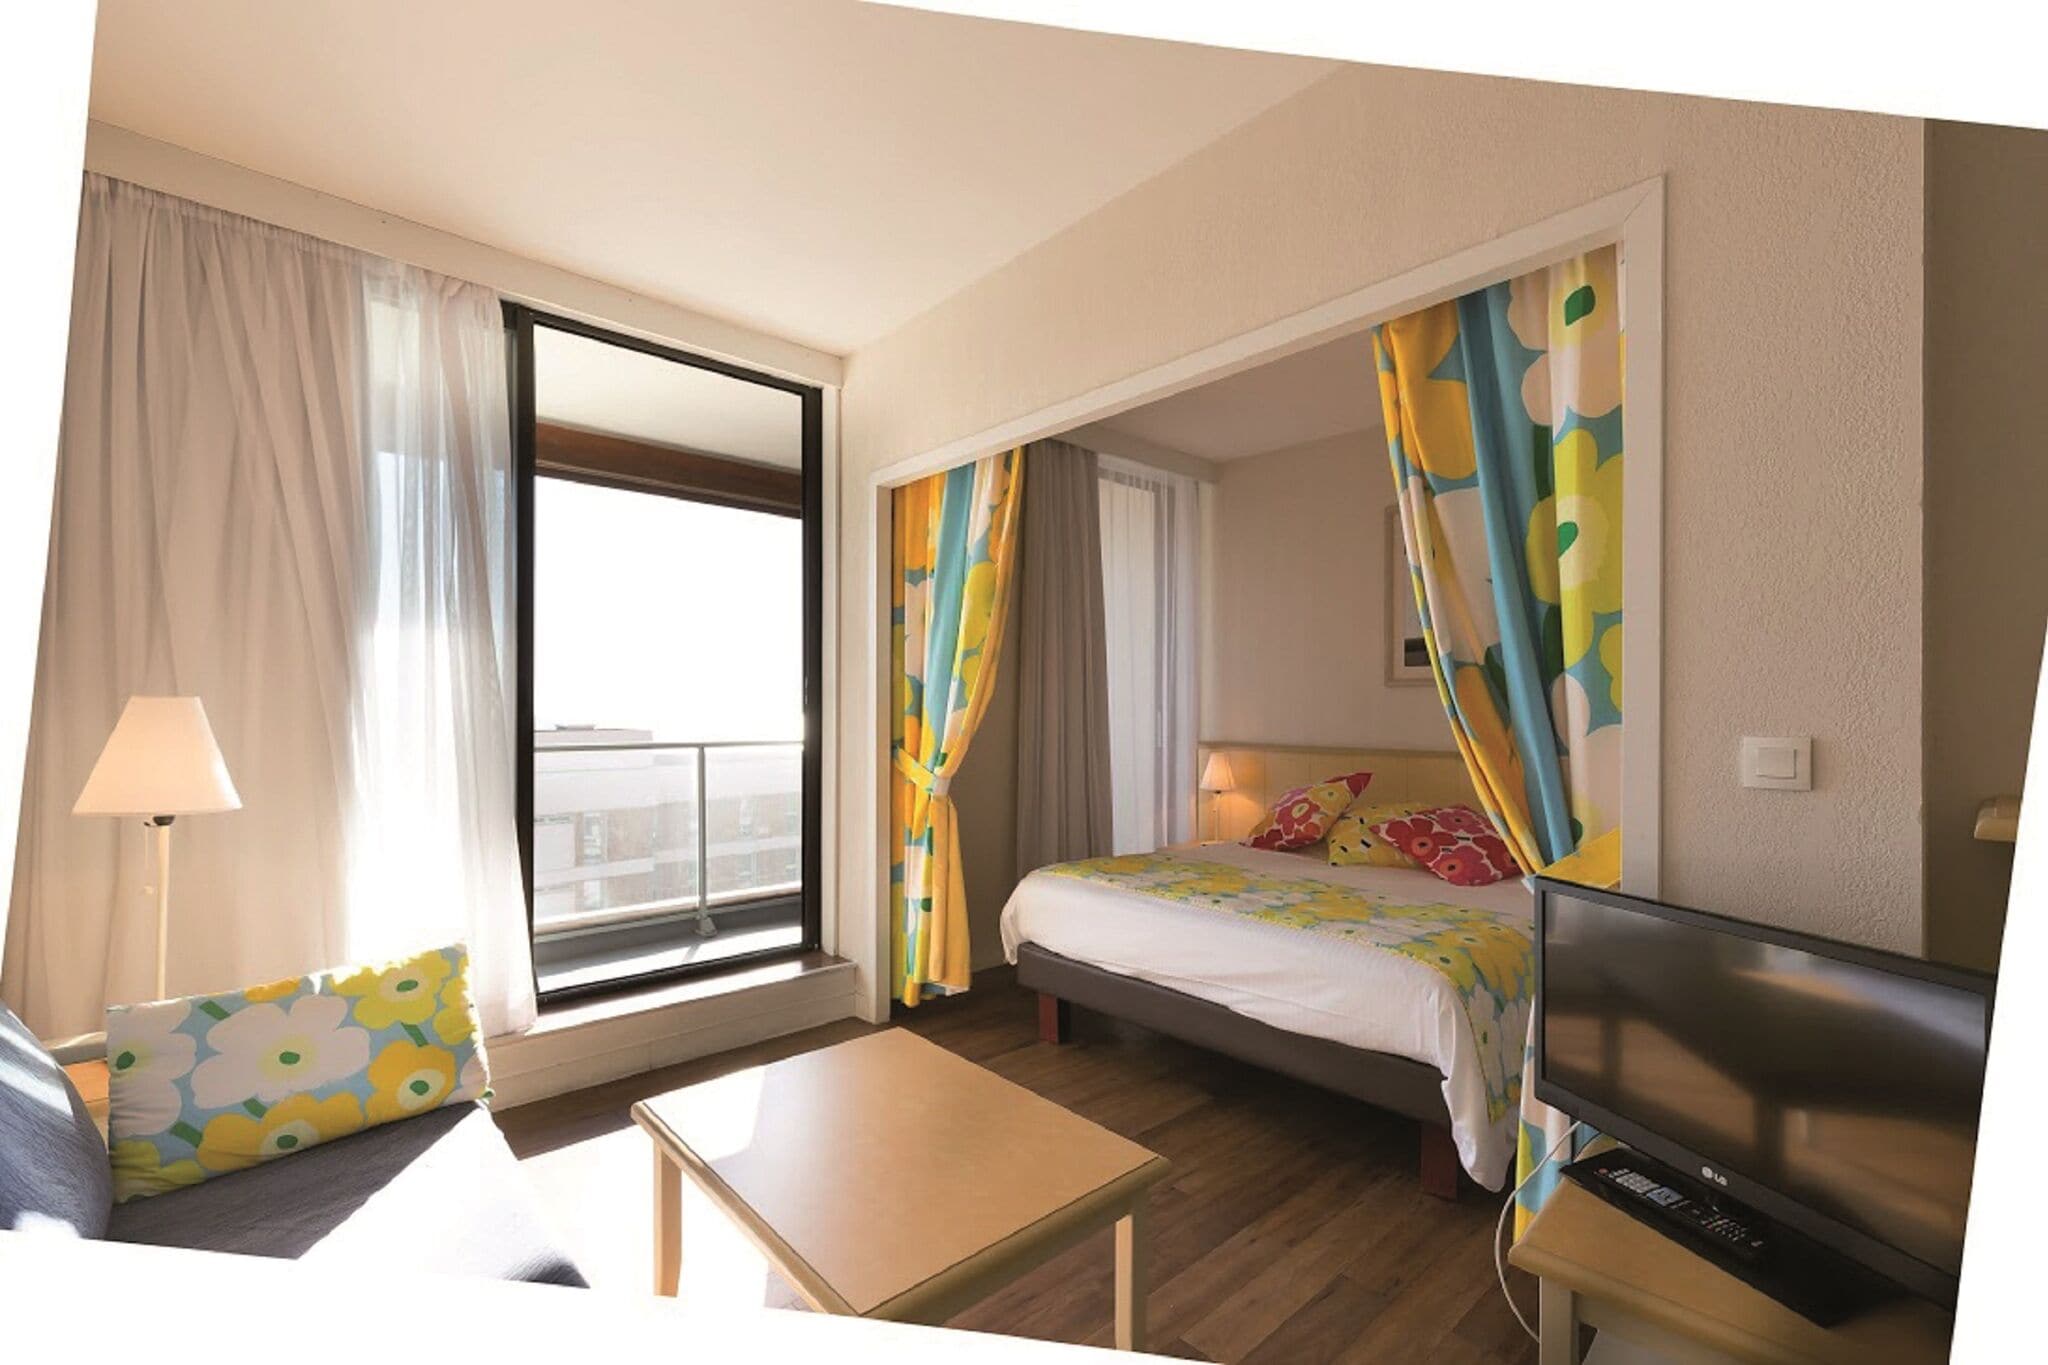 Appartement avec balcon, situé dans la station balnéaire de Biarritz